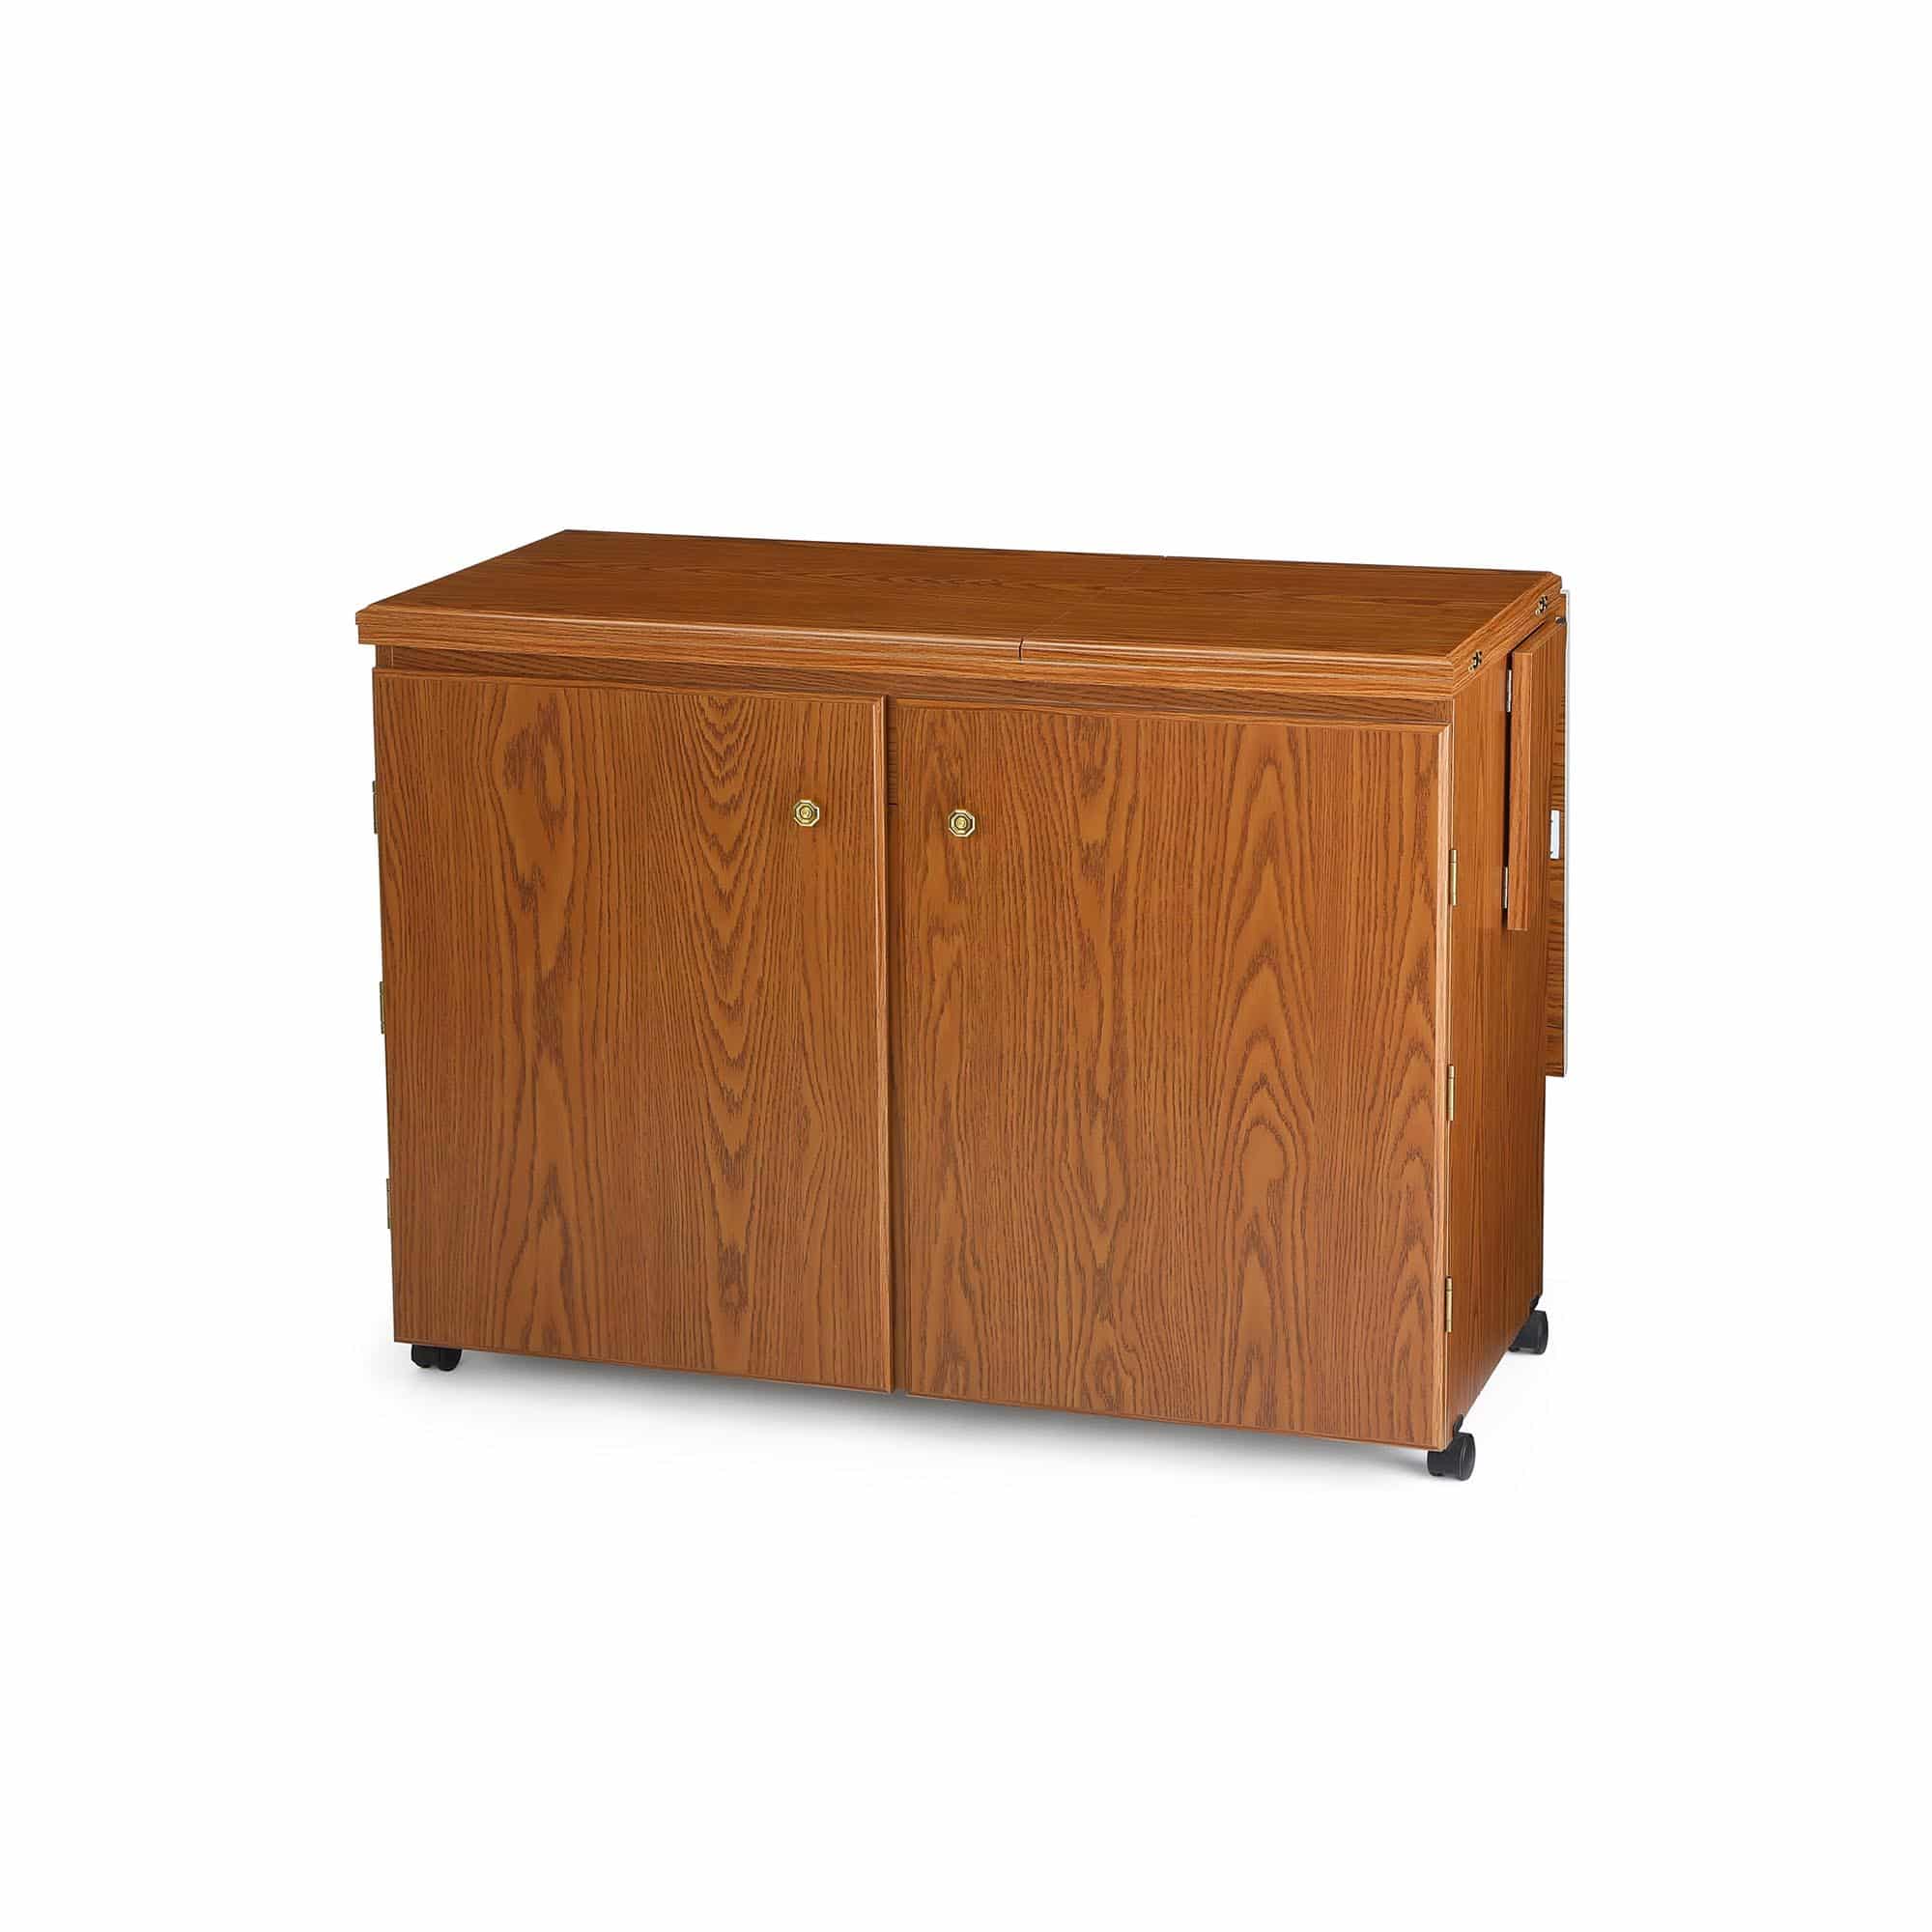 wooden storage cabinet